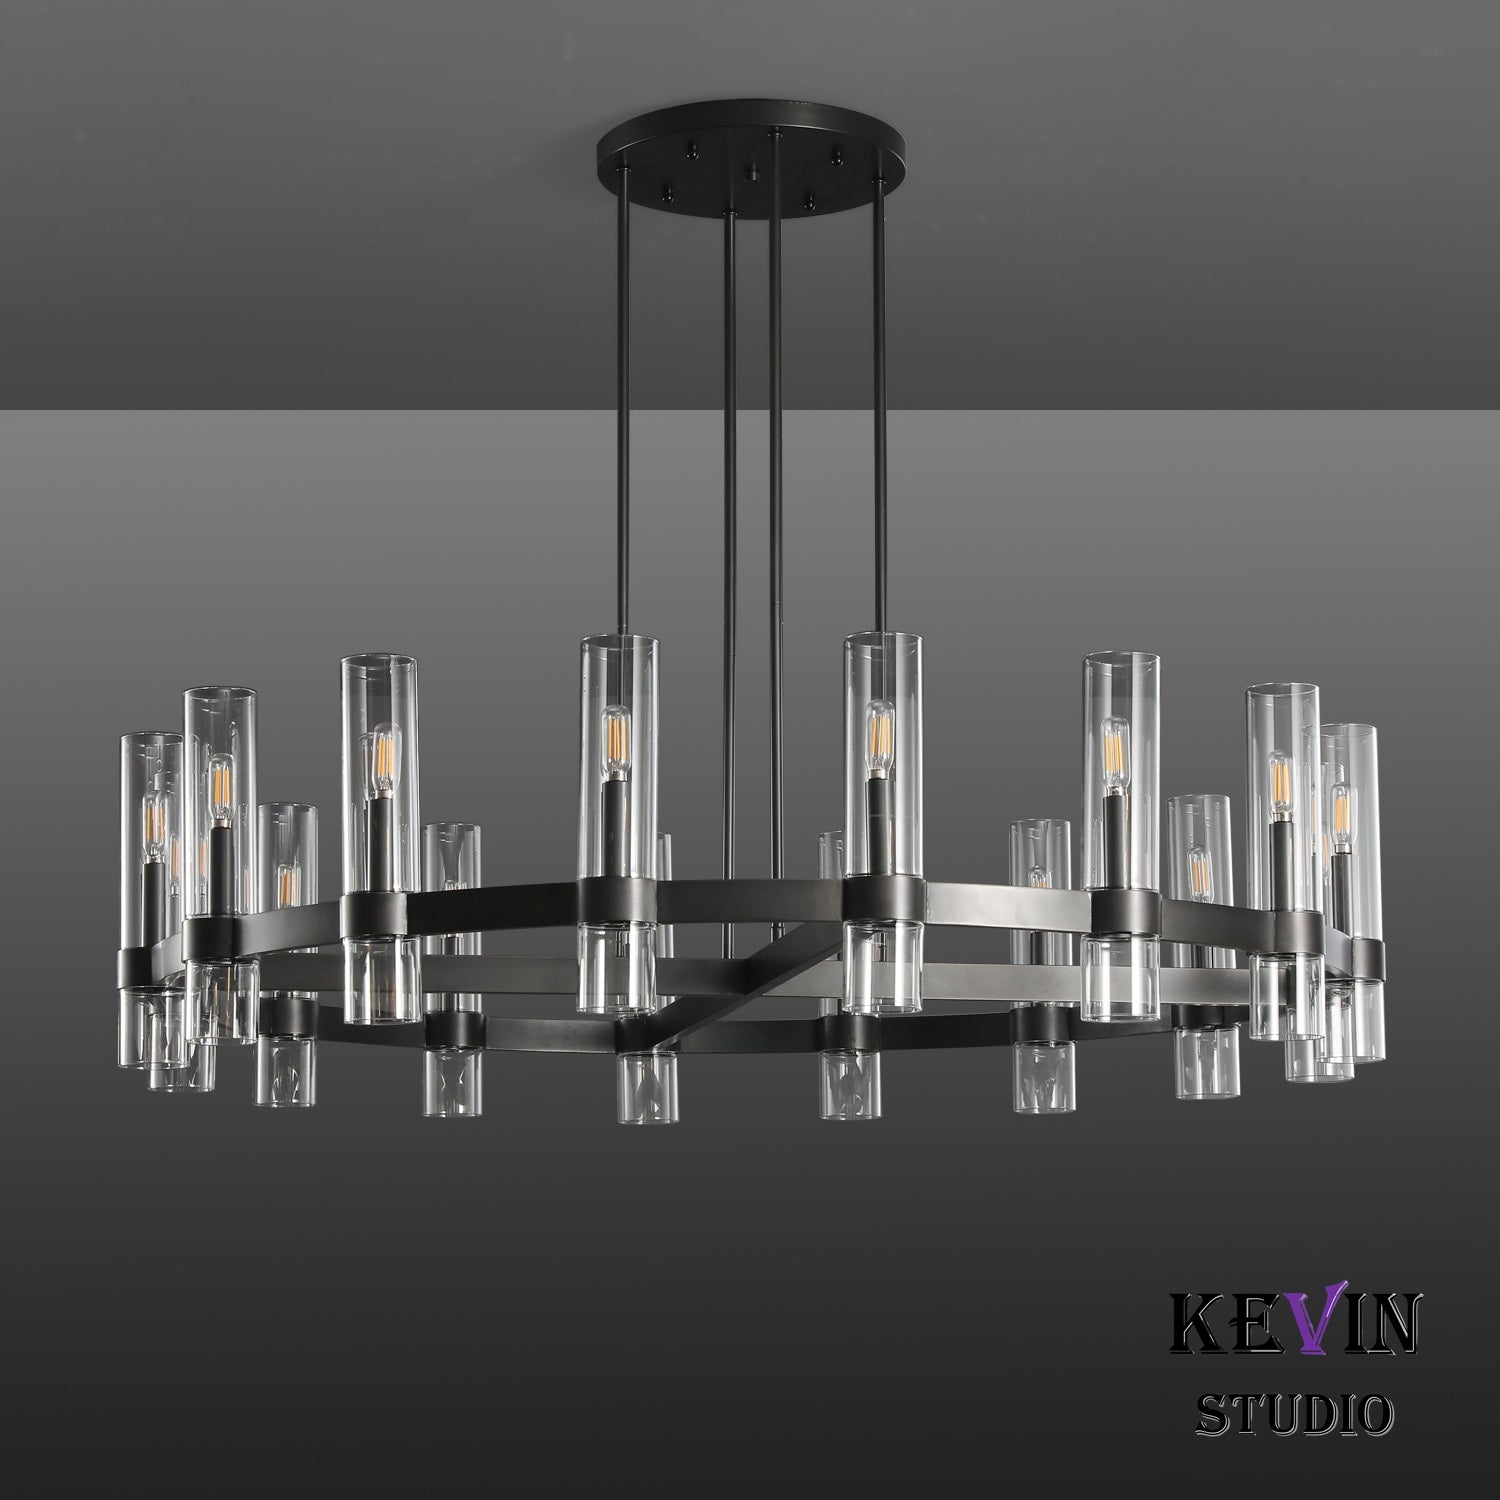 Develle Modern Round Glass Chandelier 36", 48", 60" chandelier Kevin Studio Inc   